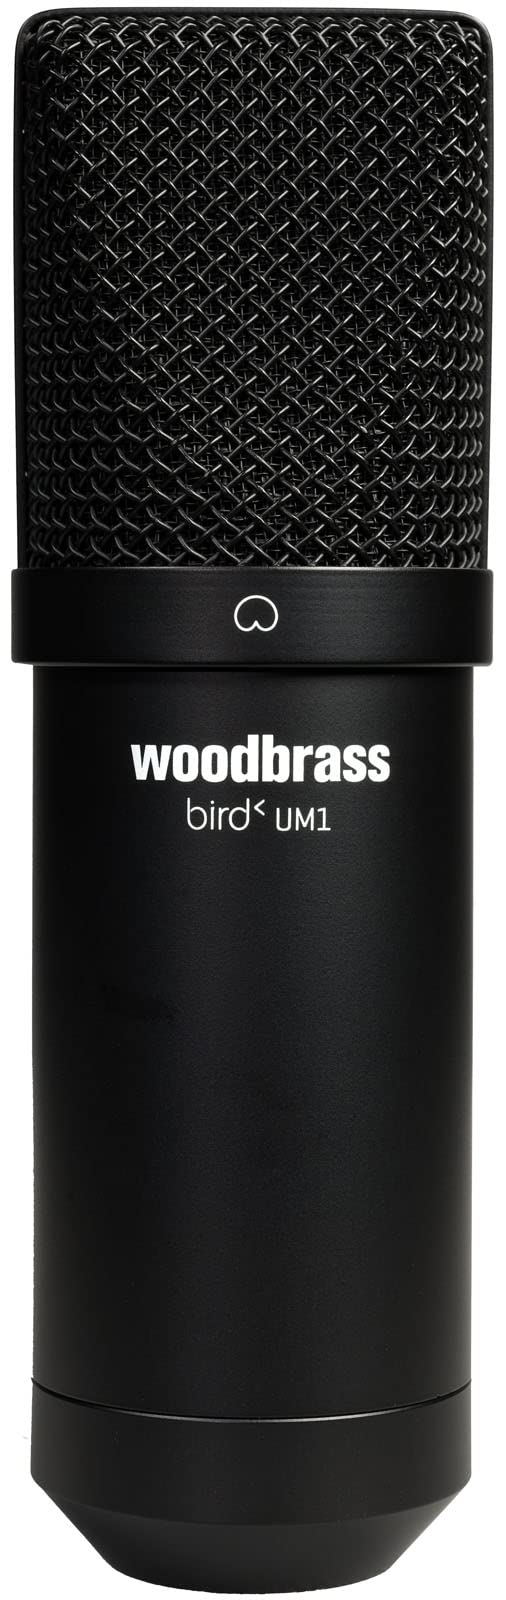 grand choix Bird Woodbrass UM1 Noir - Microphone USB Cardioïde à Condensateur PC et Mac pour Broadcast et Enregistrement Streaming, Podcasting, Conférence, Home Studio Mao, Voix Off 1xqXb02RB Outlet Shop 